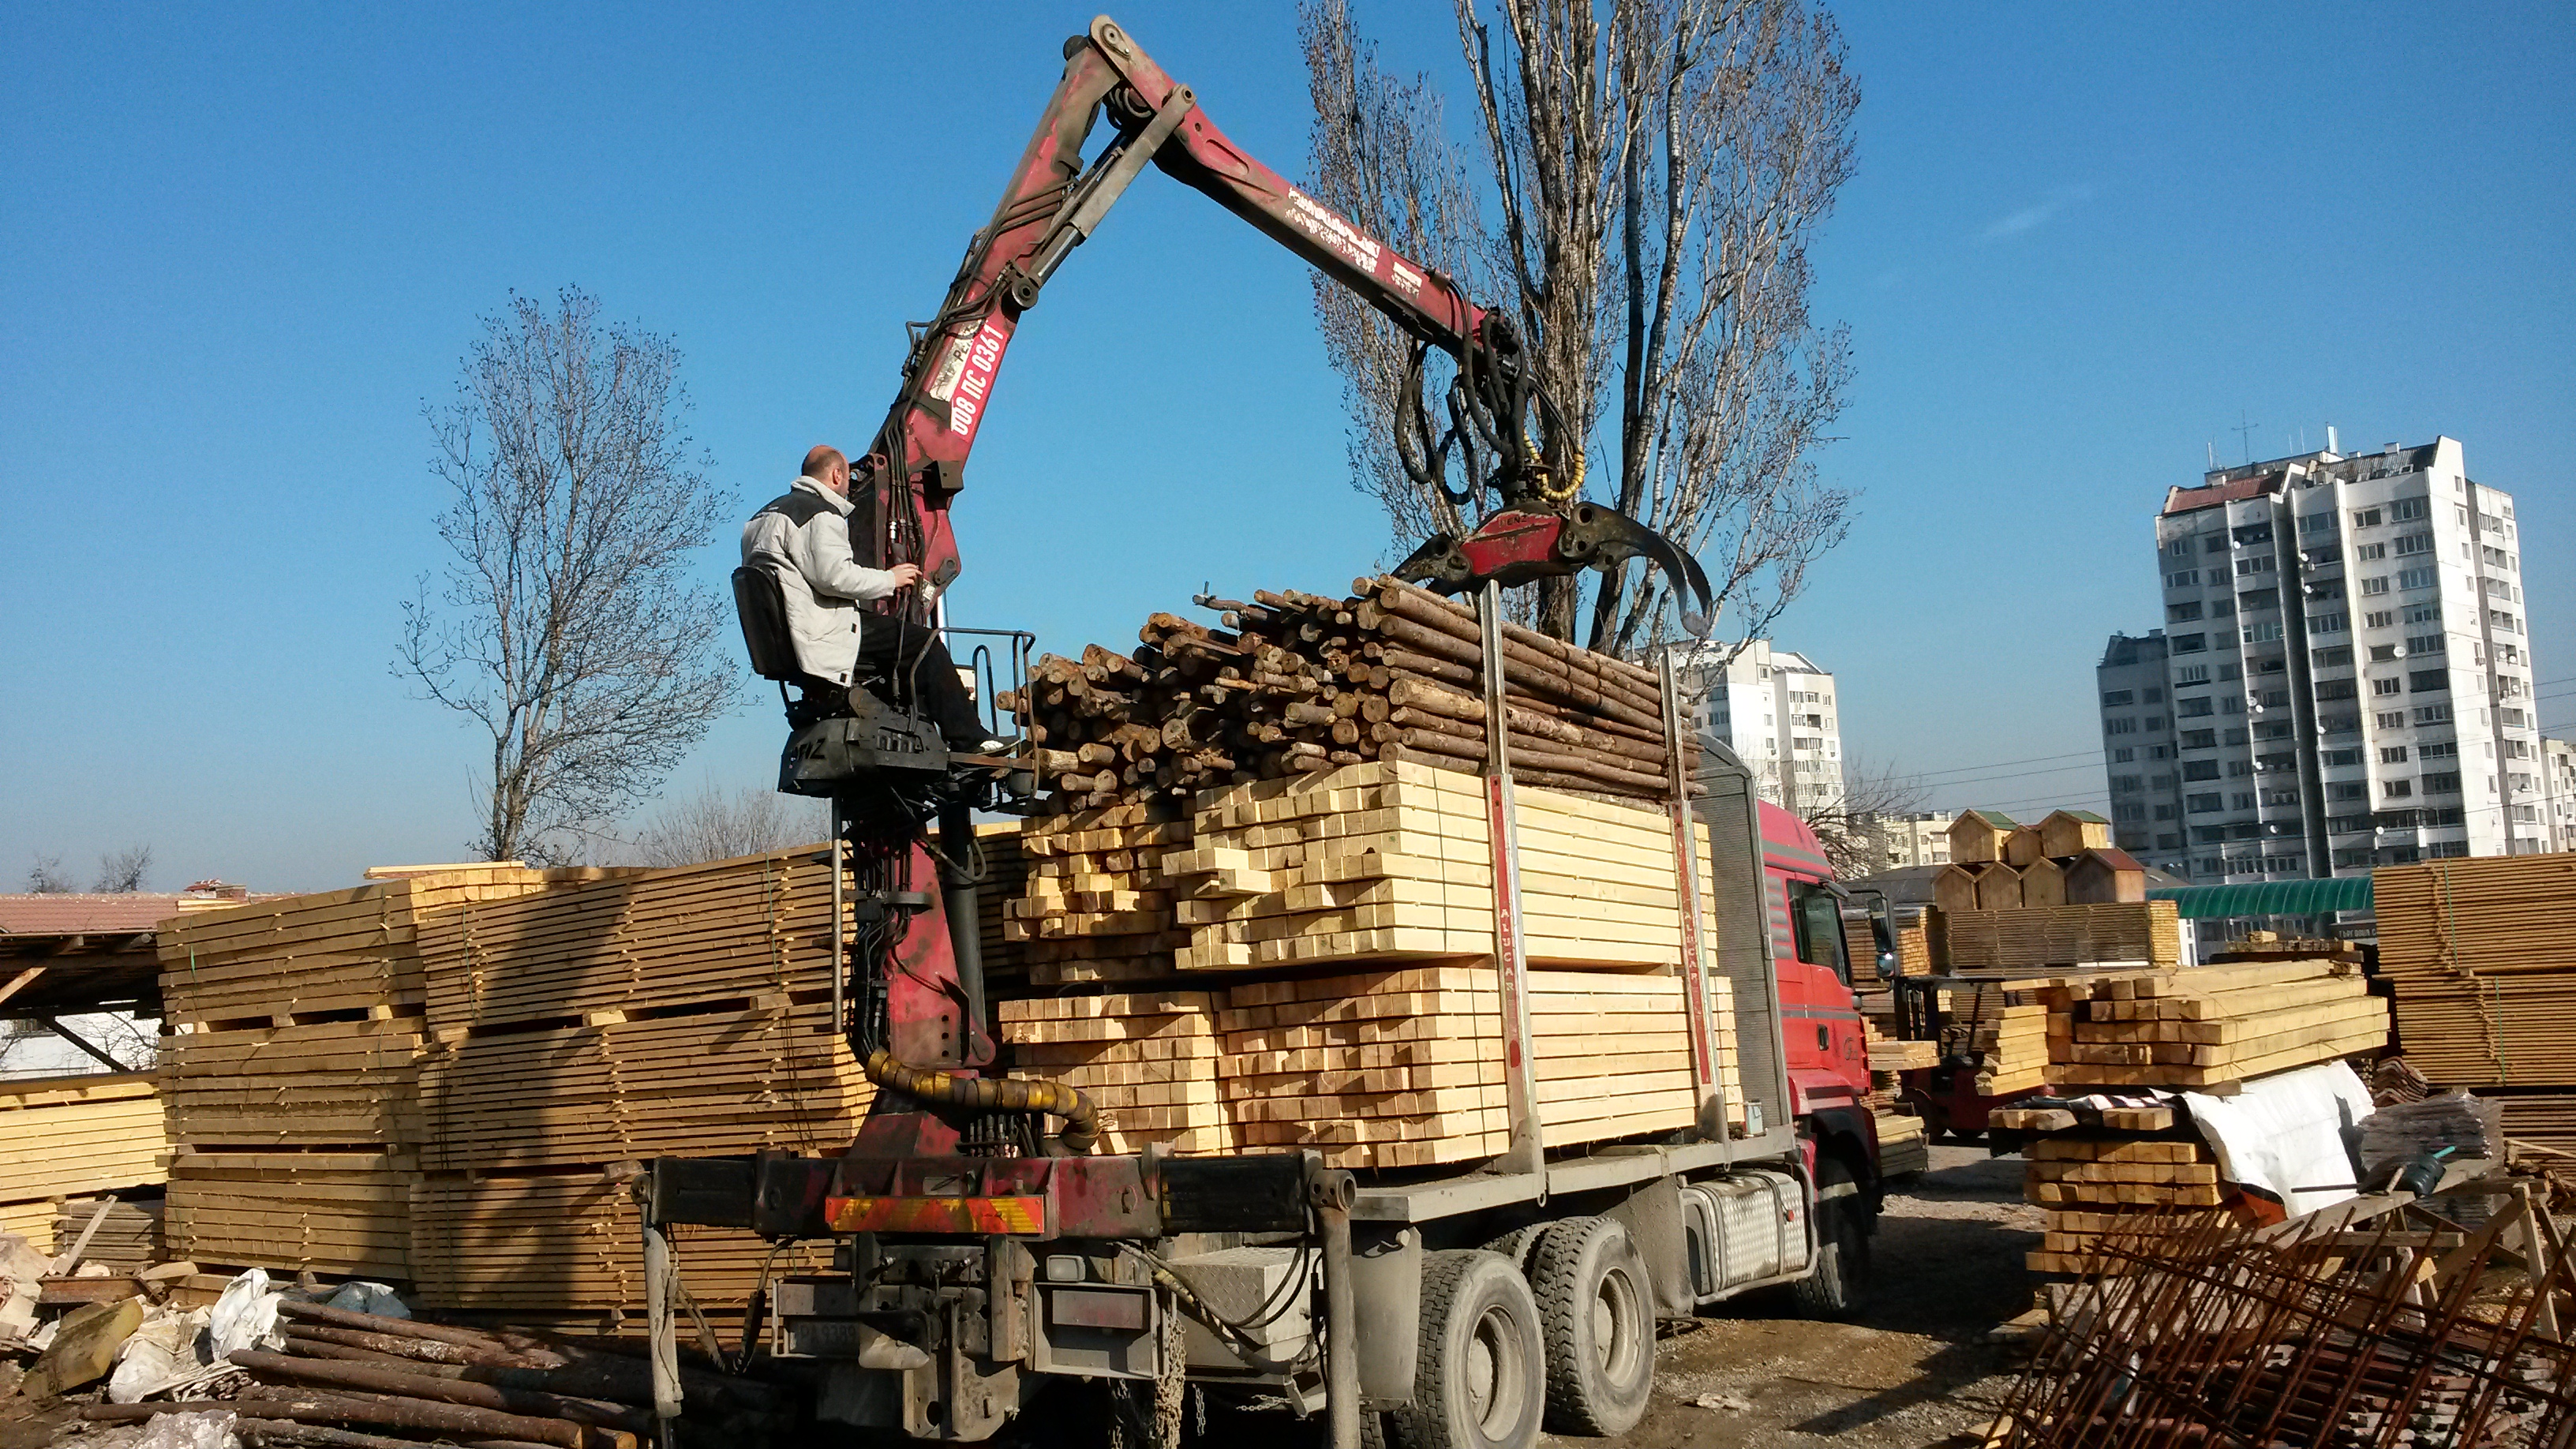 Башев 09 - Производство и търговия с дървен материал, София